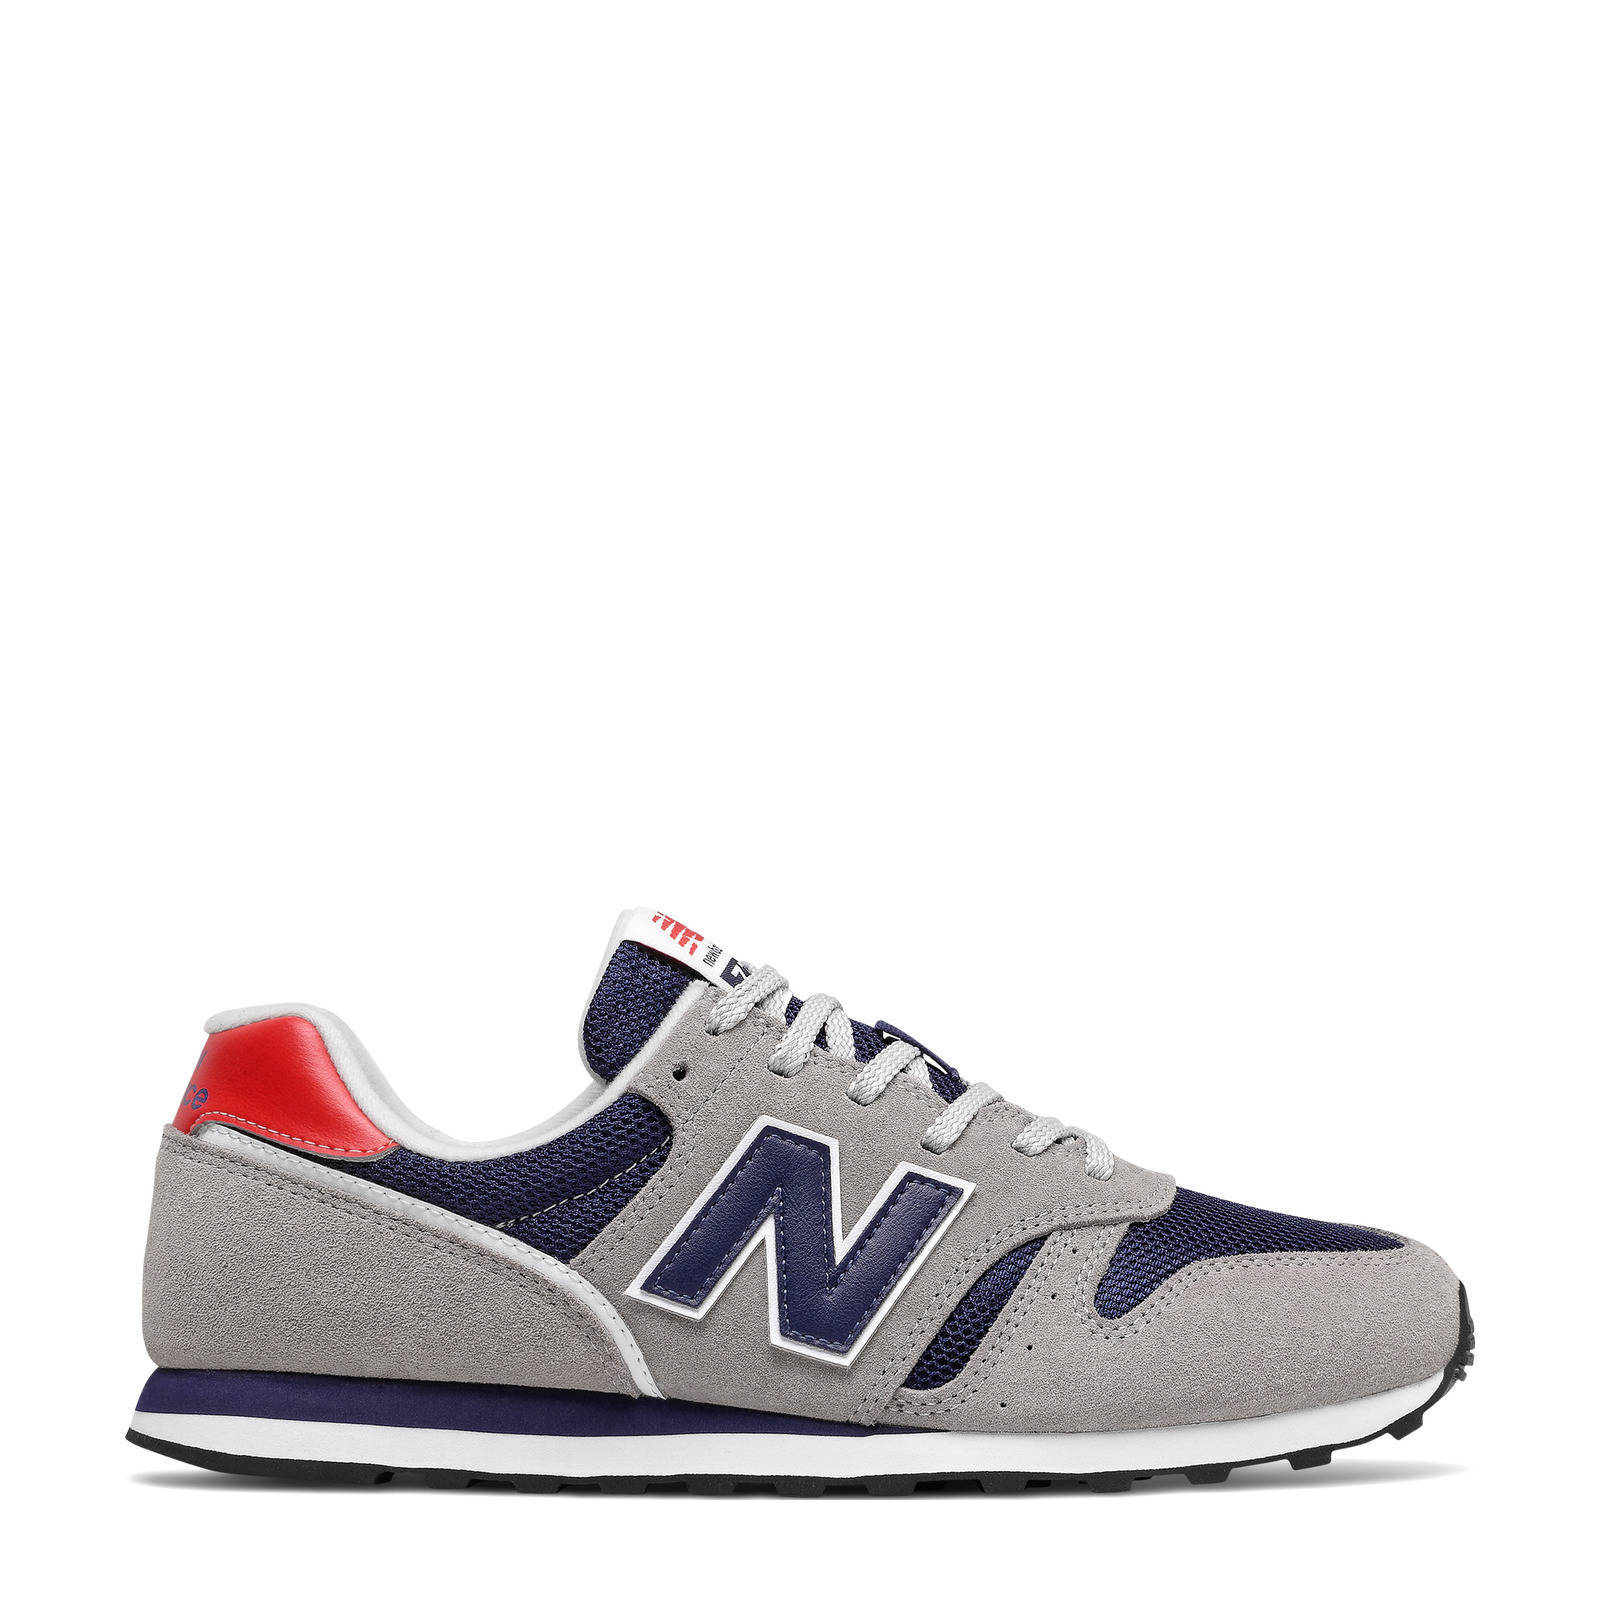 New Balance 373 sneakers grijs/donkerblauw/rood online kopen